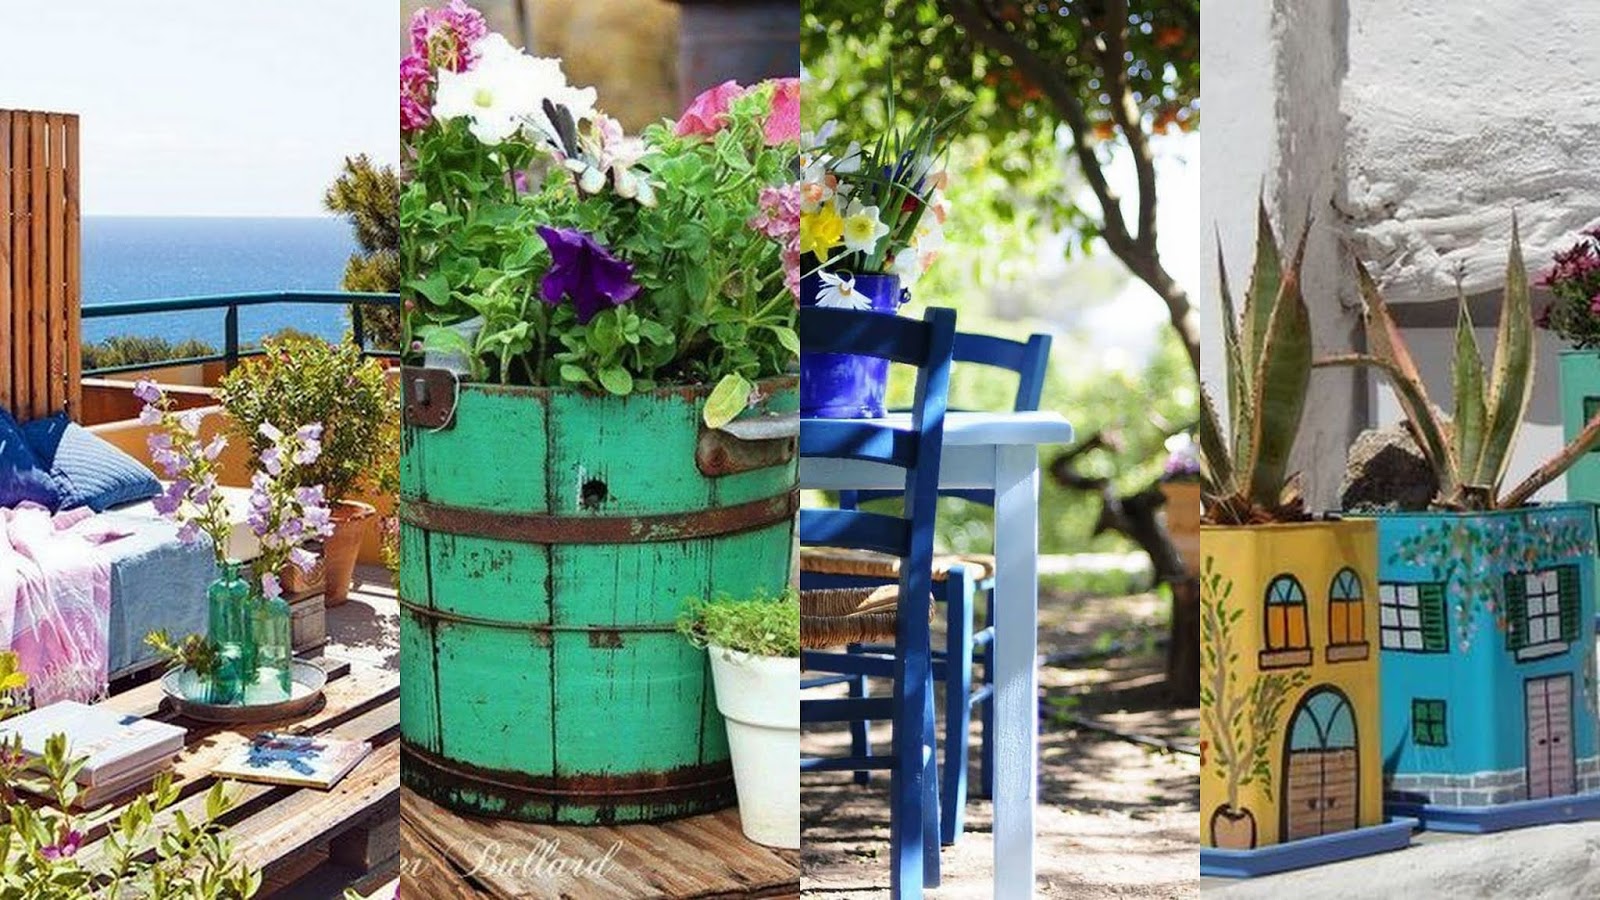 30+ Ιδέες για να προσθέσετε χρώμα στον κήπο ή το μπαλκόνι - Φωτογραφία 2